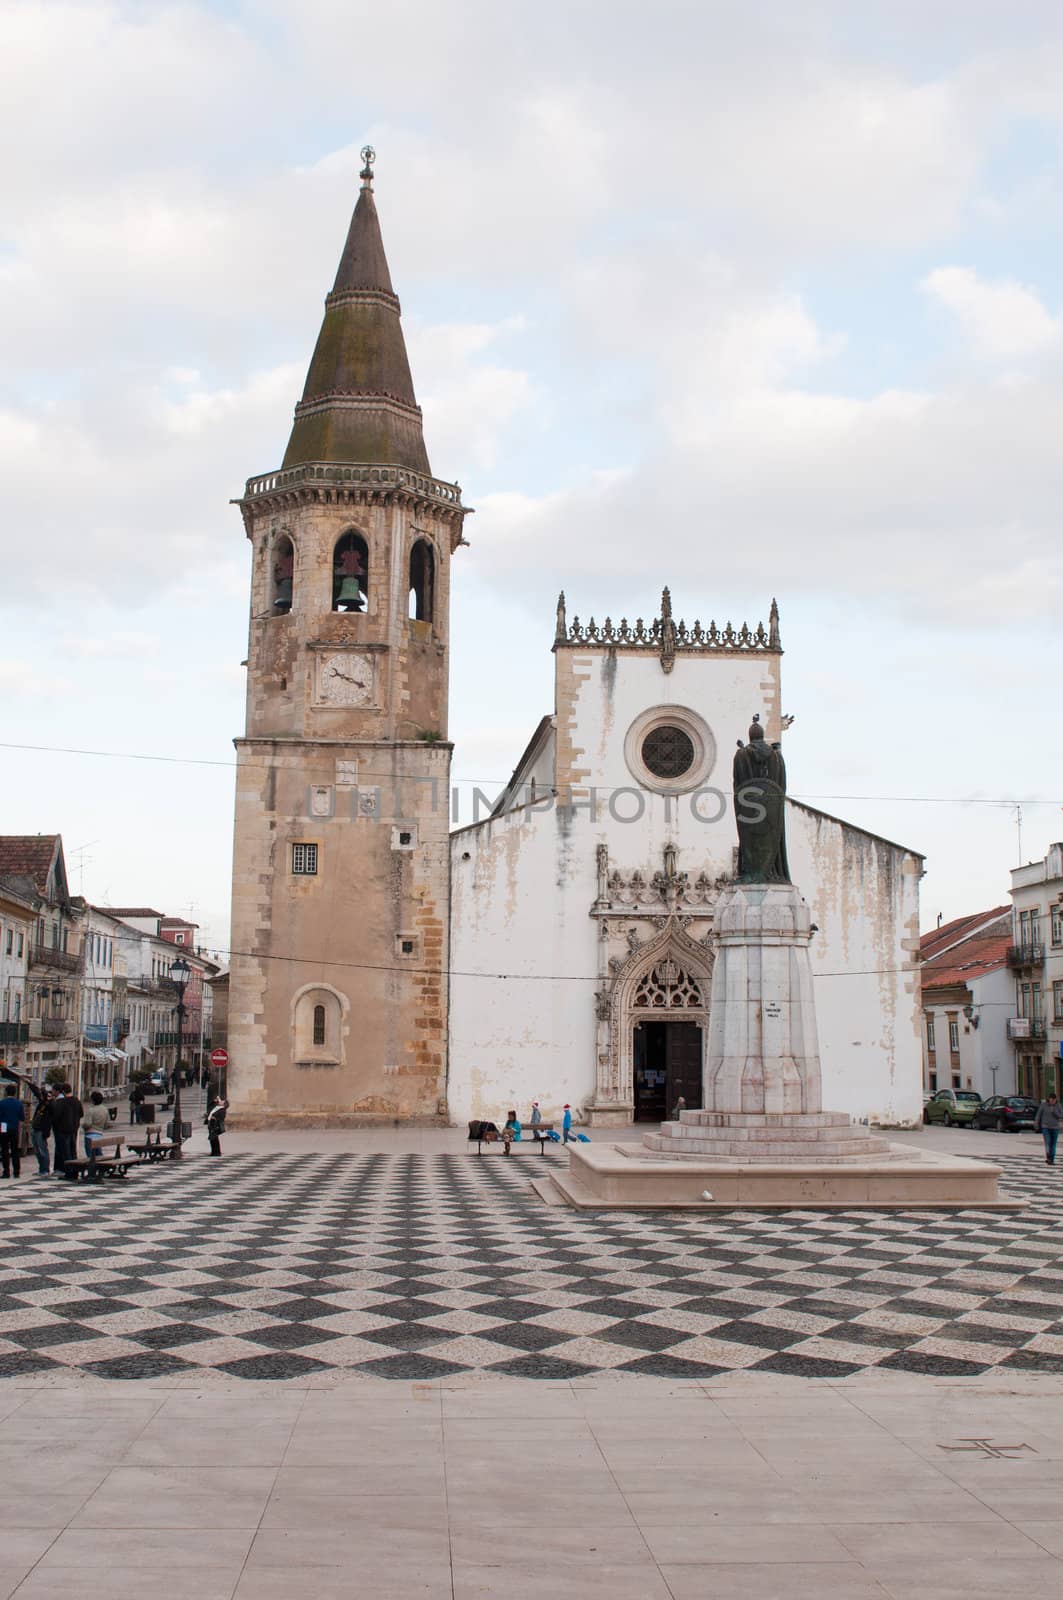 Church of S�o Jo�o Baptista in Tomar, Portugal